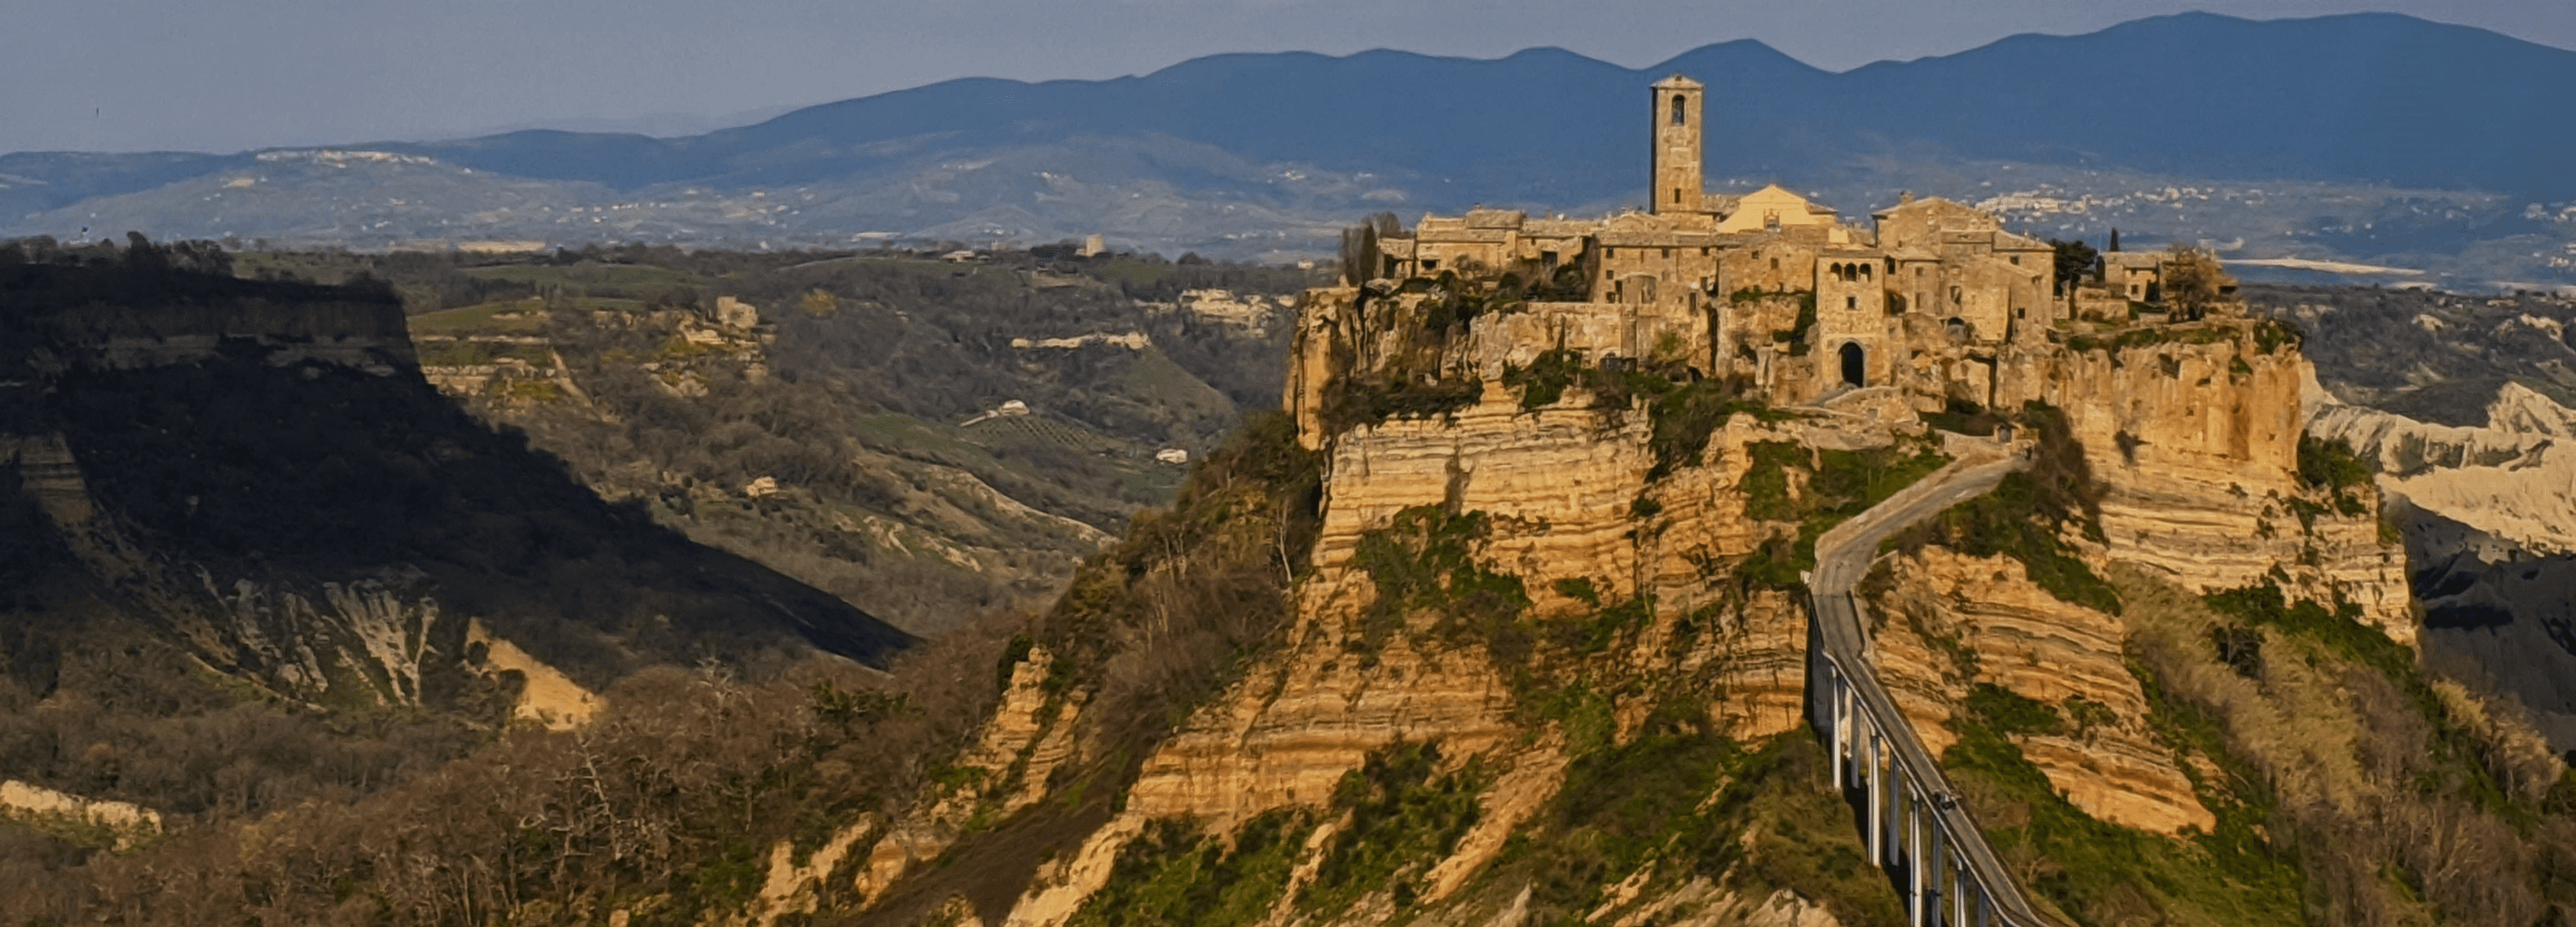 Foto de Civita di bagnoregio vista de longe, é possível ver suas casas no topo da montanha no estilo medieval, com uma ponte que leva até ela.